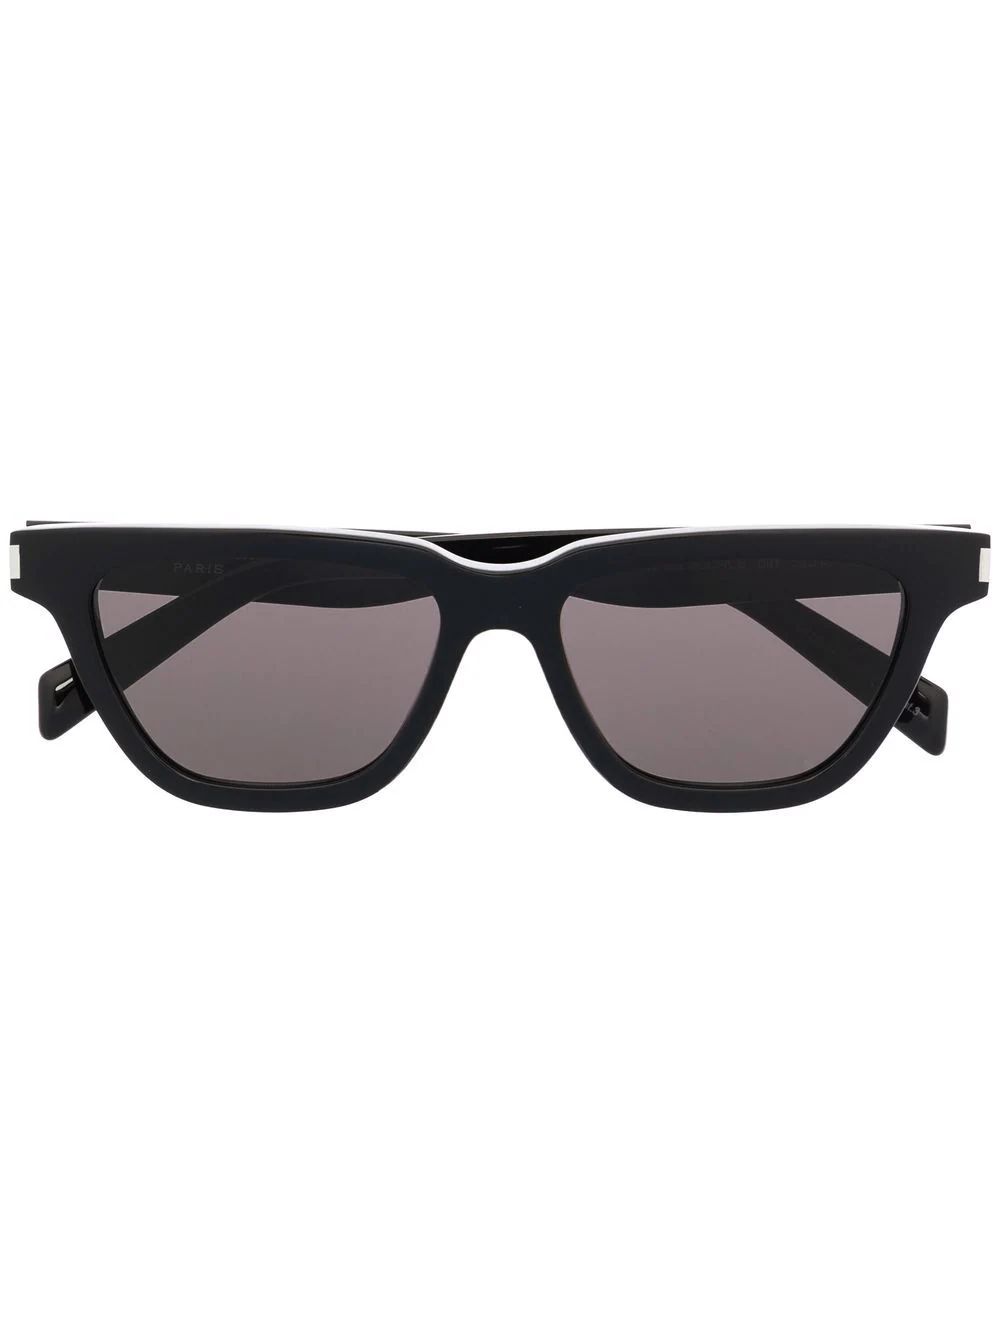 Saint Laurent Eyewear SL 462 Sulpice D-frame Sunglasses - Farfetch | Farfetch Global